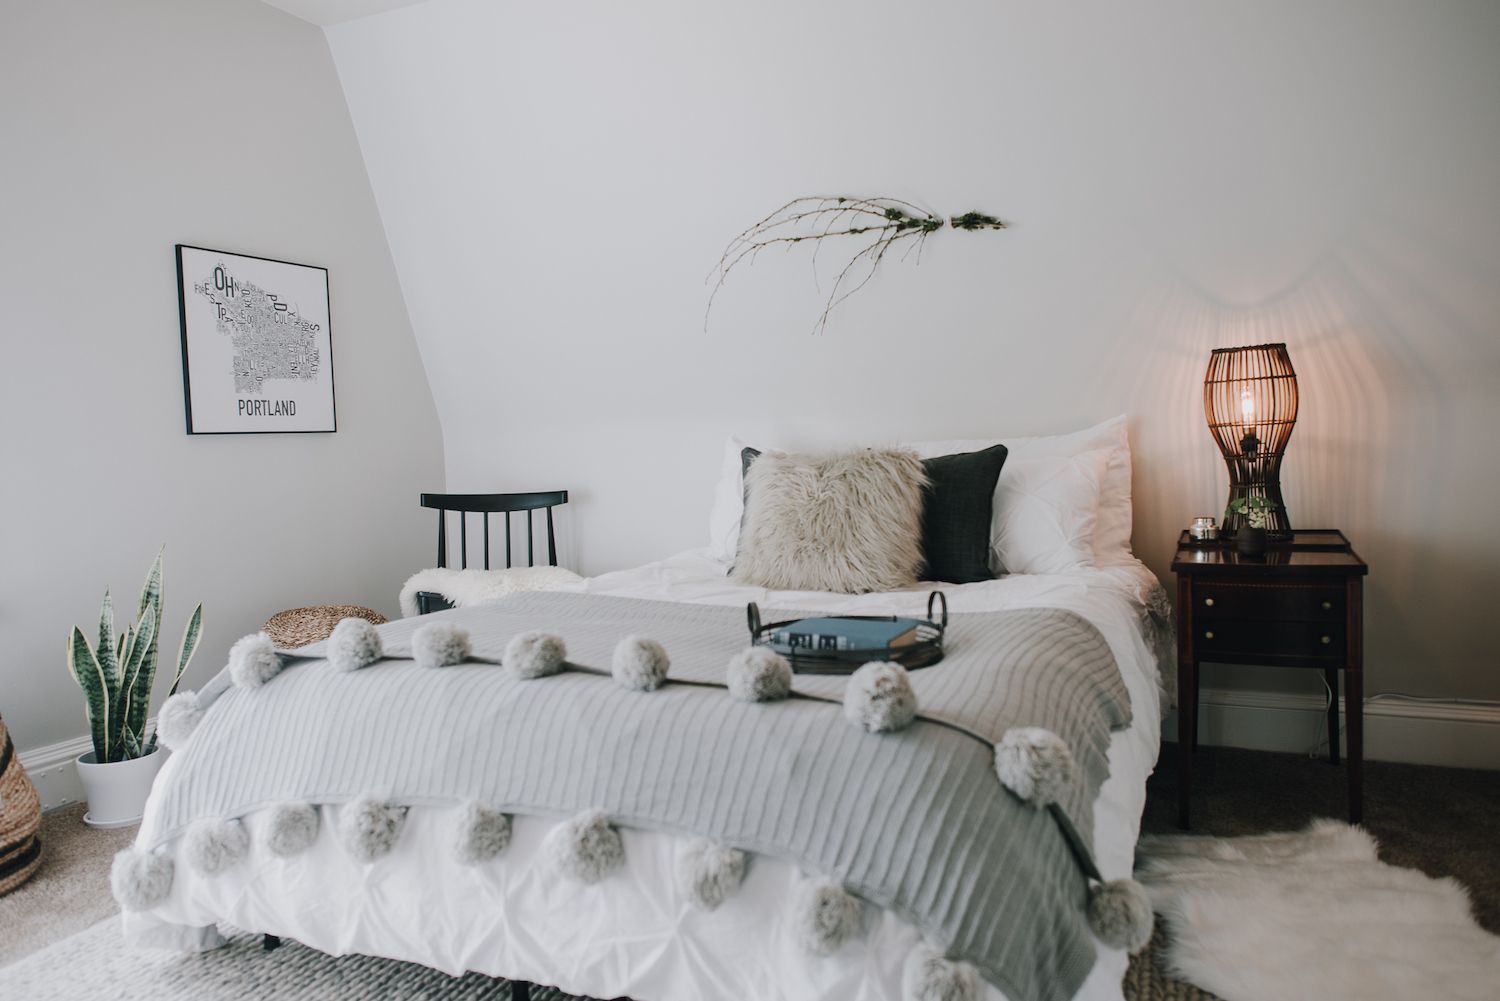 Modernes Schlafzimmer mit weichen Texturen: Plüschkissen, graue Decke mit Pompons am Ende. Kühle Töne